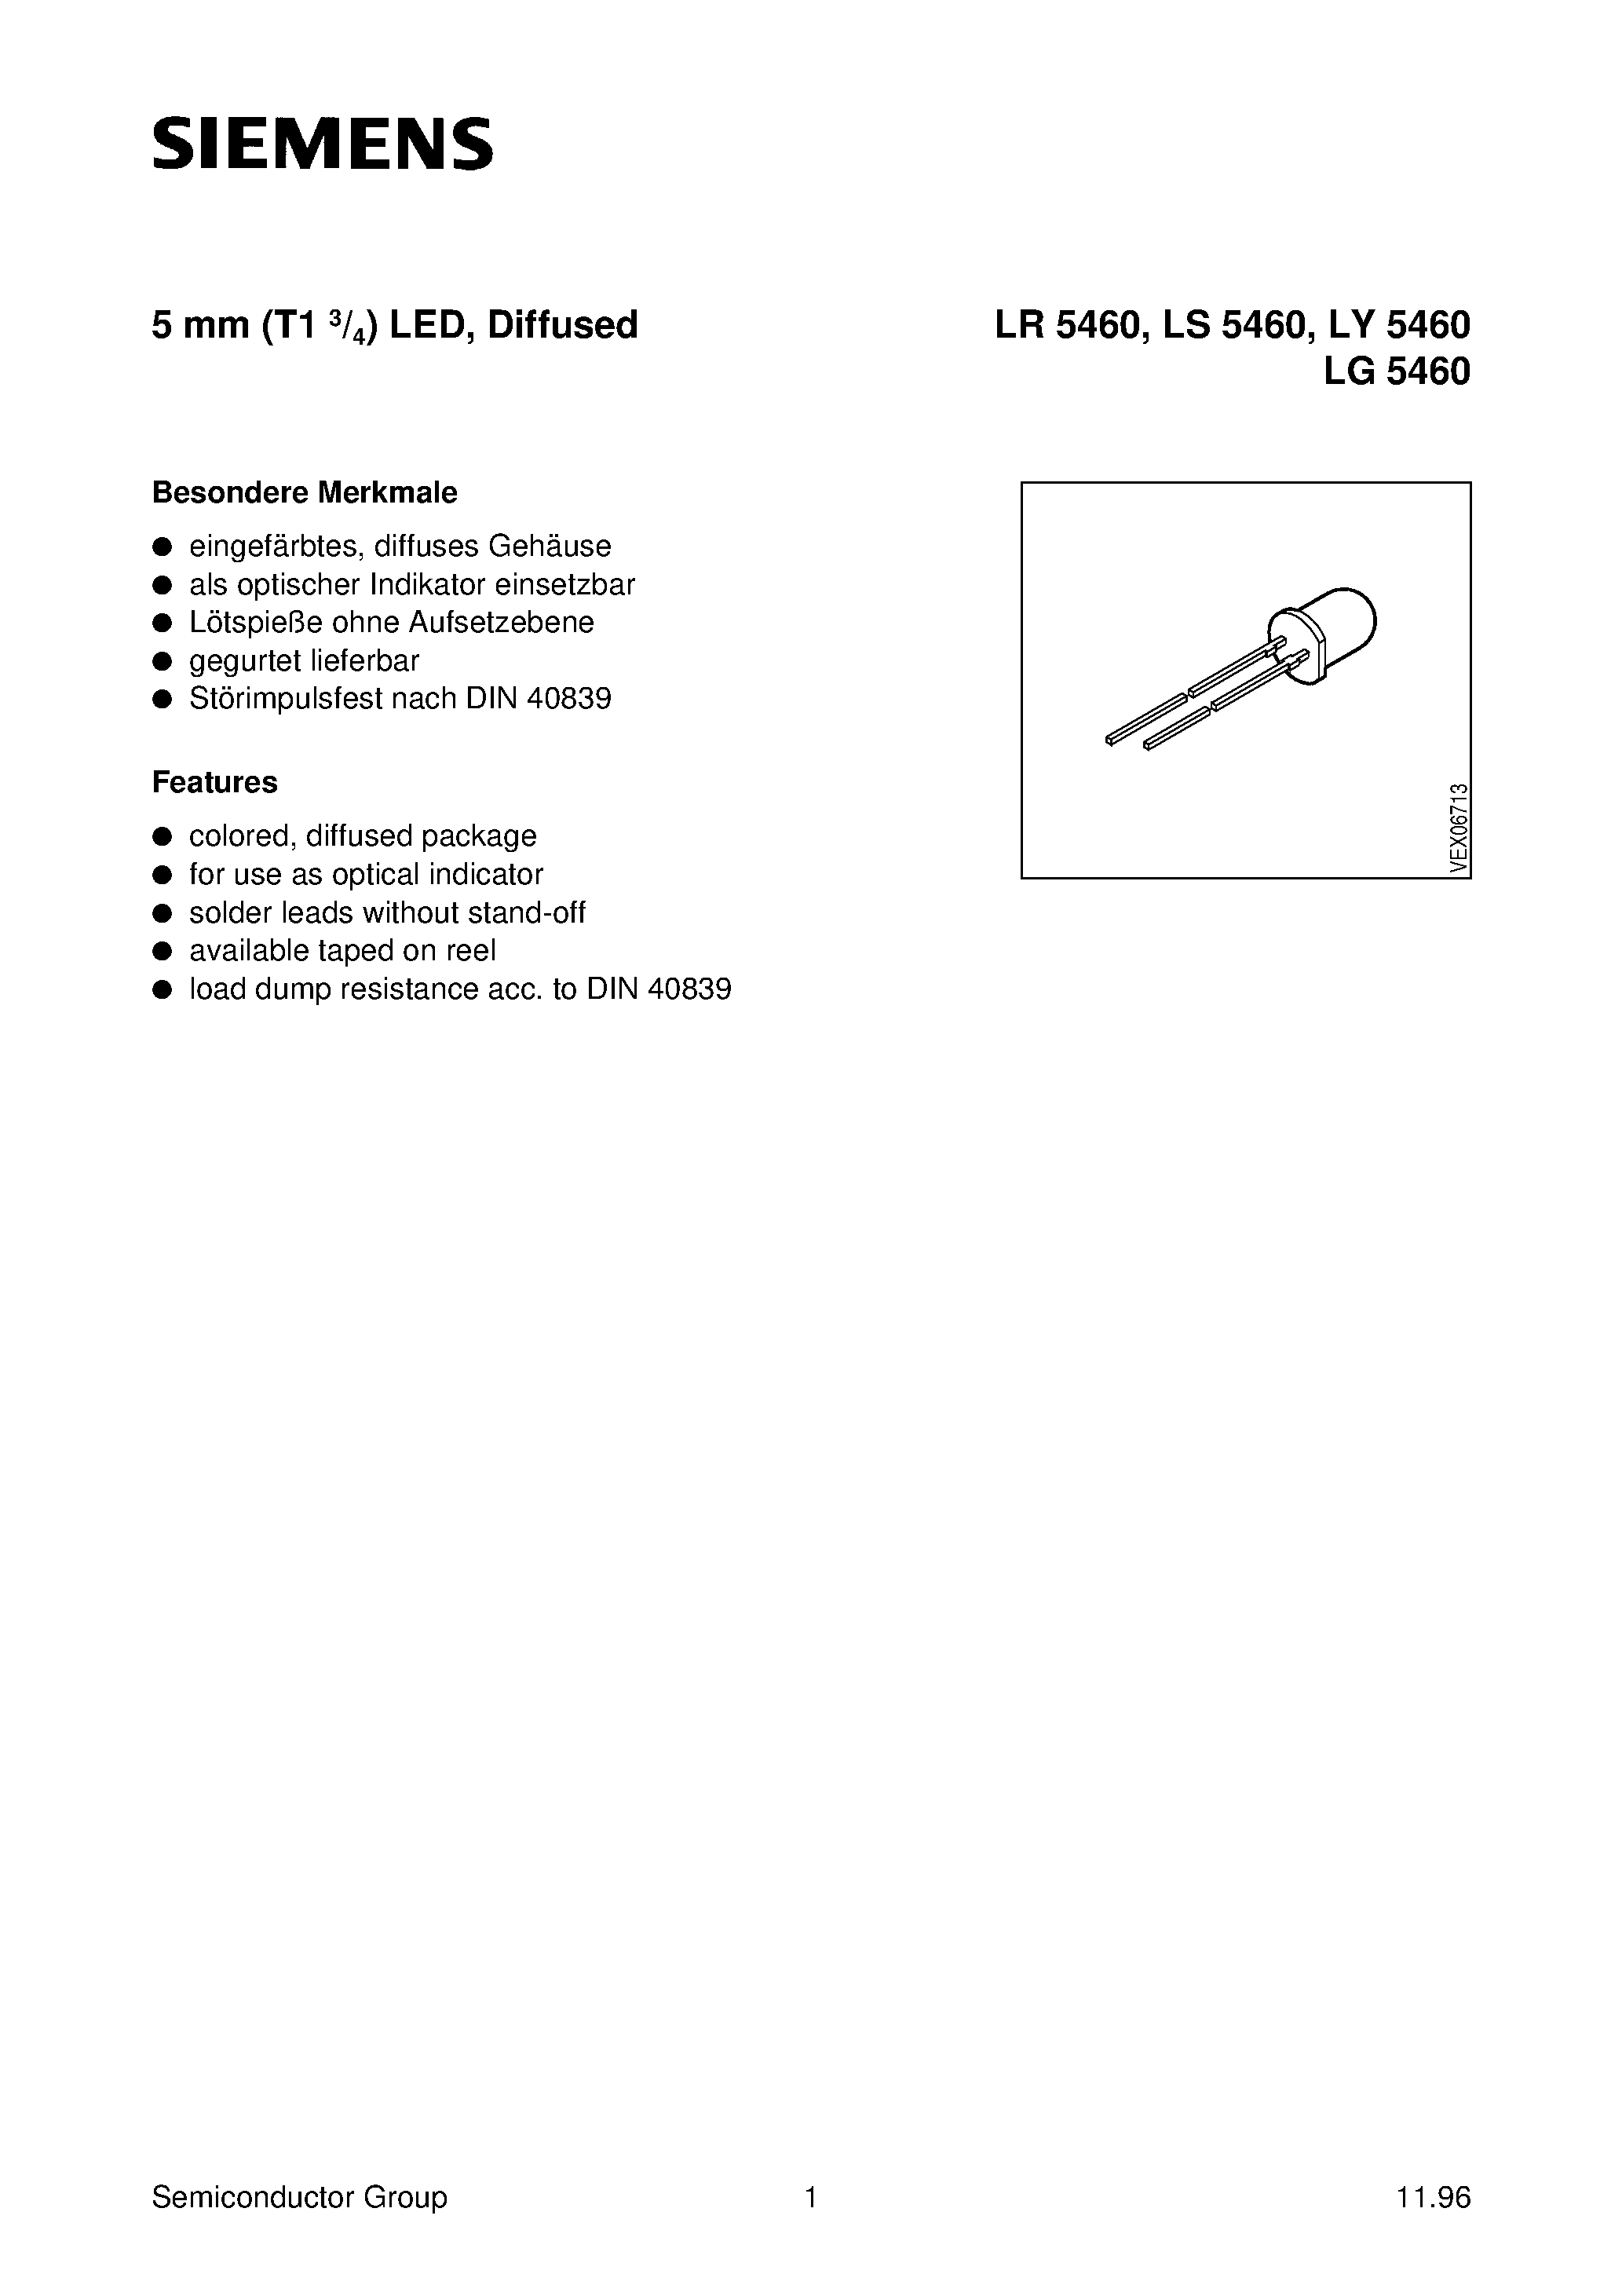 Datasheet LY5460-K - T1 (5mm) LED LAMP page 1